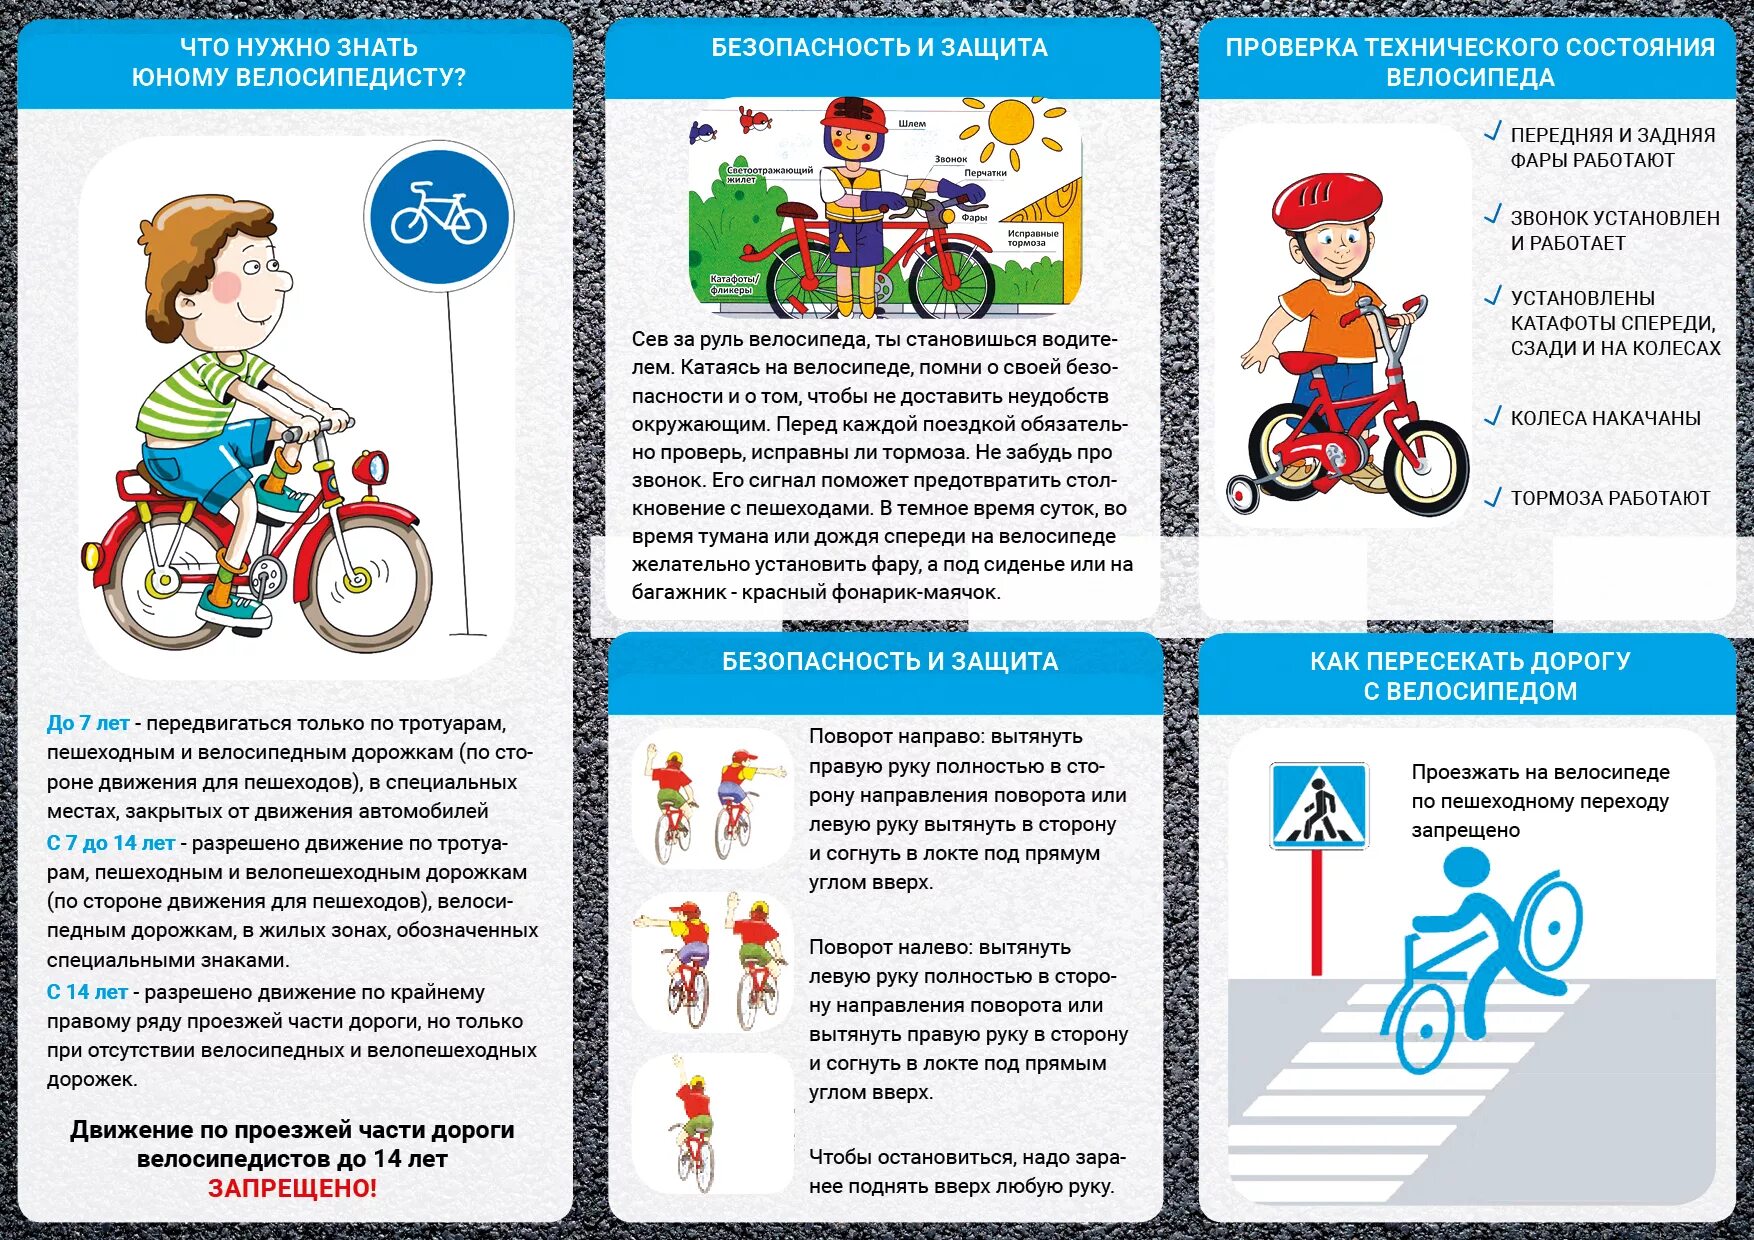 Памятка ПДД для велосипедистов для детей. Памятка для родителей по ПДД велосипед для детей. Памятка для велосипедистов по ПДД для дошкольников. ПДД на велосипеде для детей памятка. Правило велосипедиста от 7 до 14